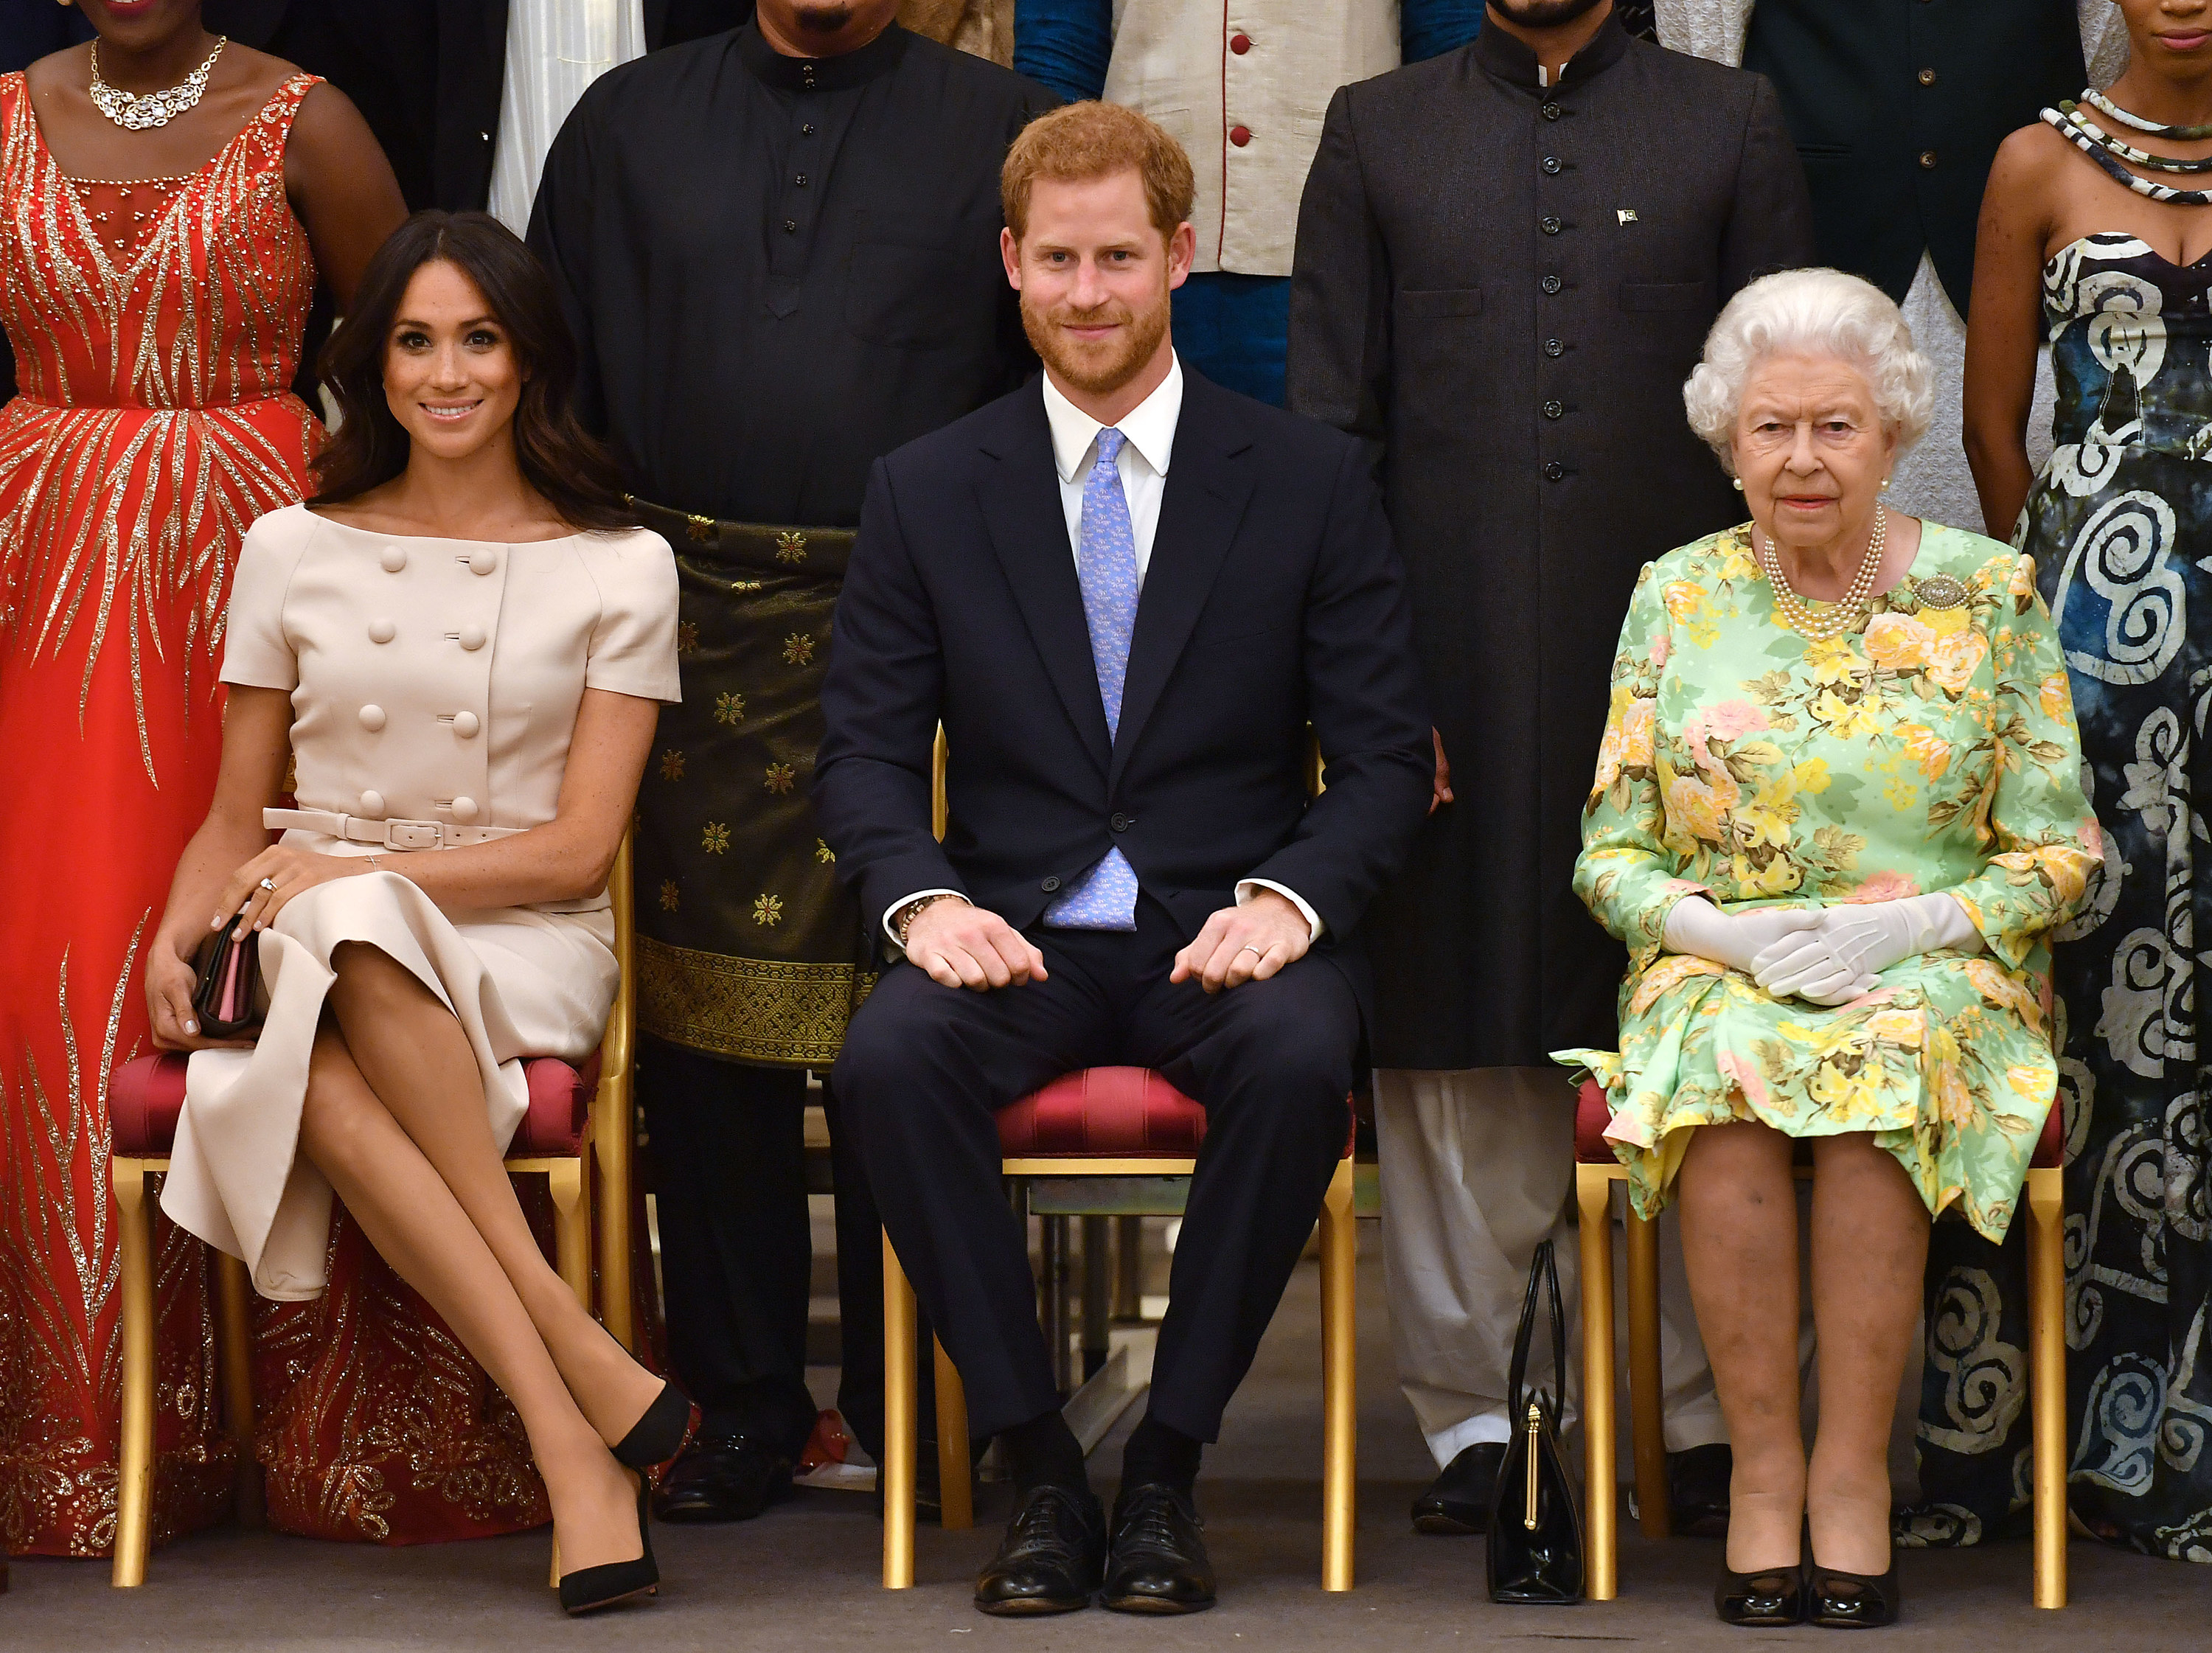 梅根·,哈利和女王坐在椅子上在一个事件